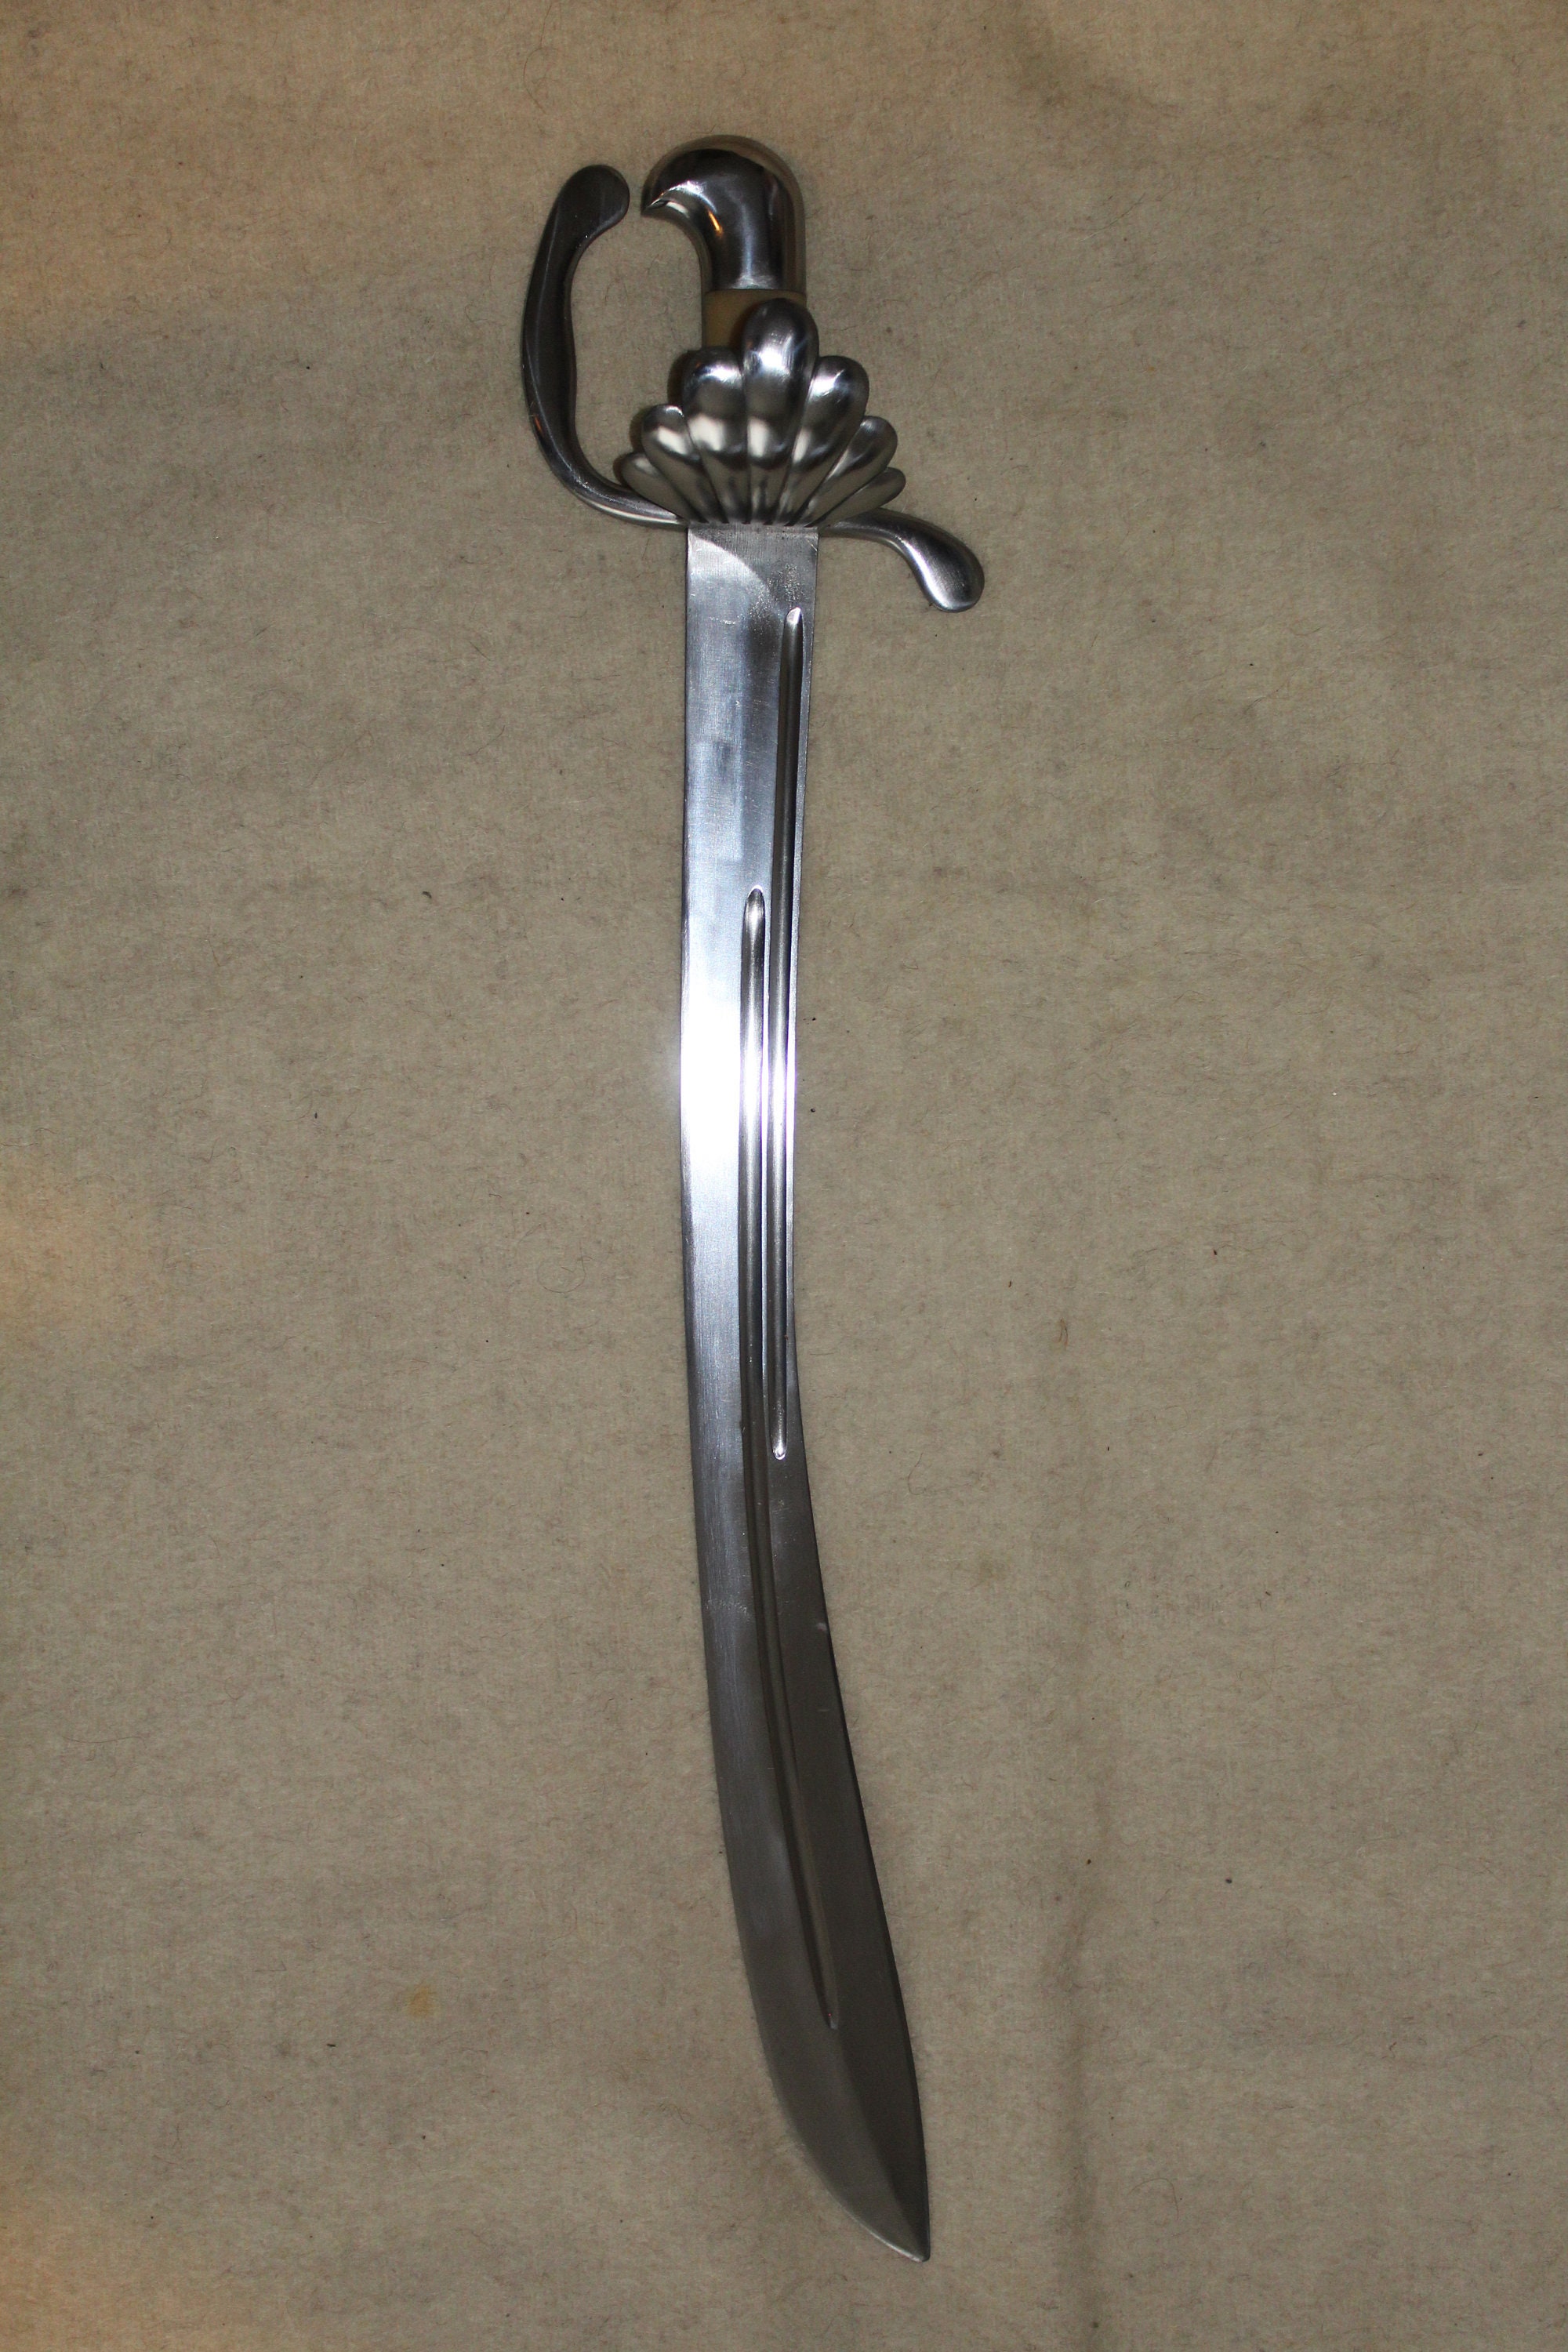 dussack sword